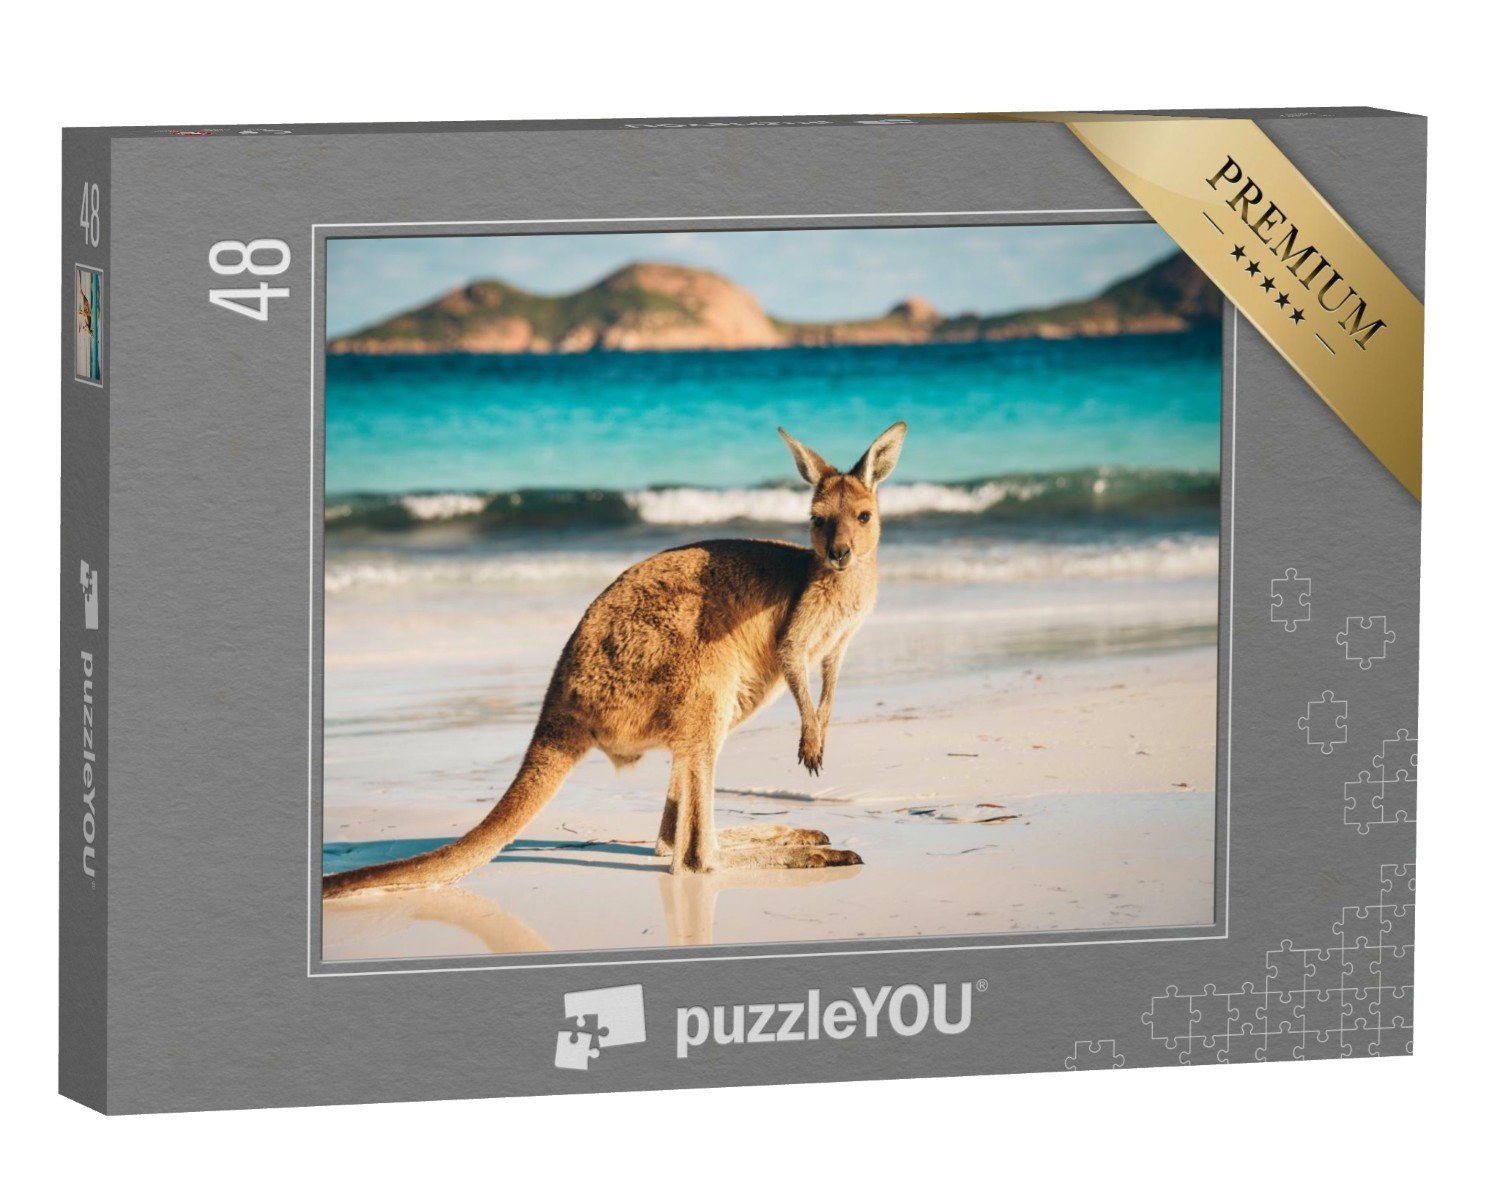 puzzleYOU Puzzle Känguru, Cape Le Grand National Park, Australien, 48 Puzzleteile, puzzleYOU-Kollektionen Tiere, Kängurus, Exotische Tiere & Trend-Tiere